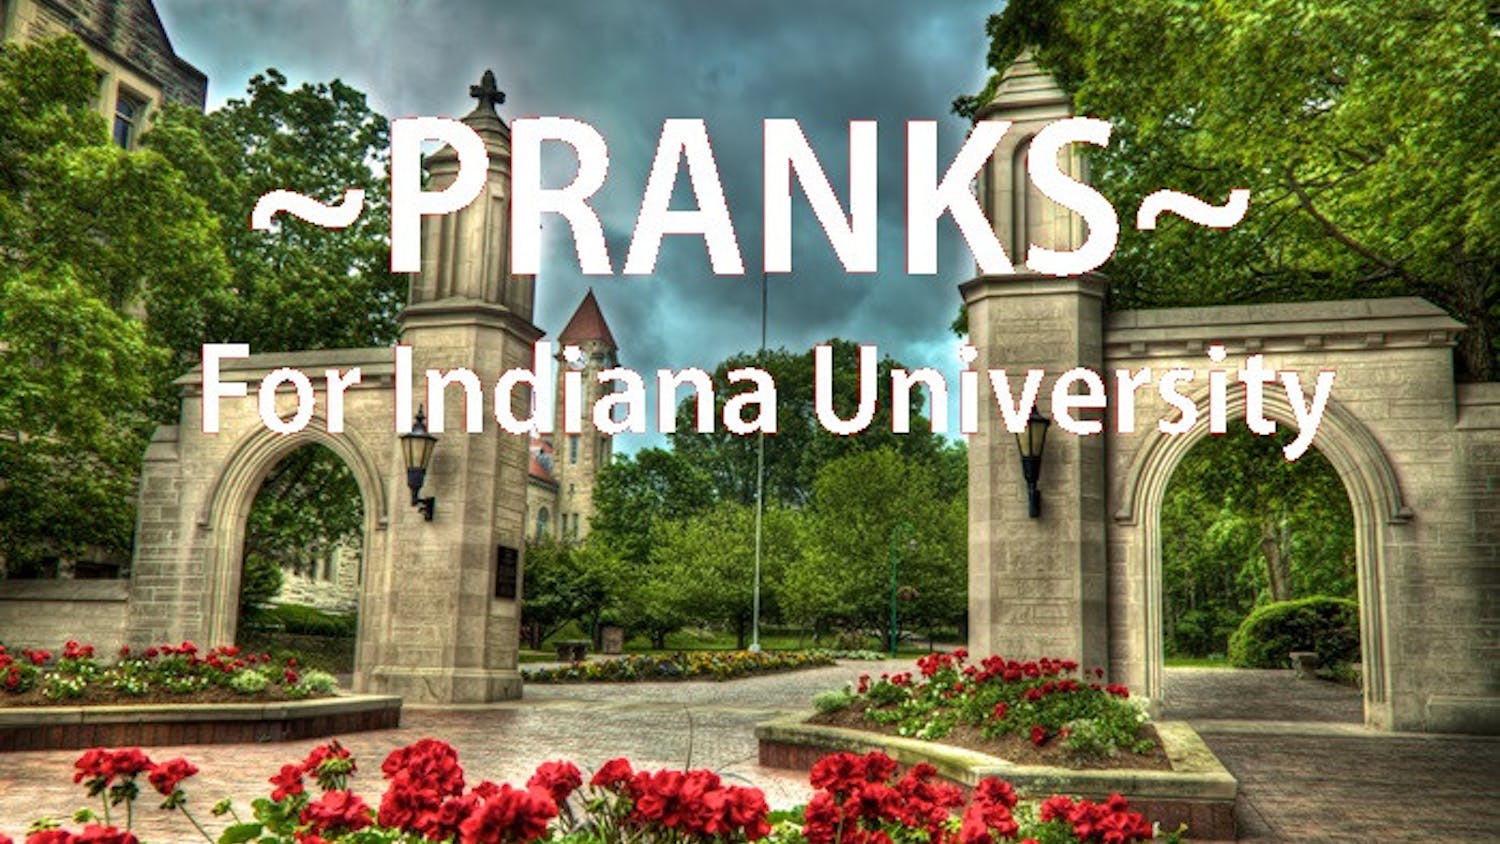 Indiana-University-Sample-Gates_700-1